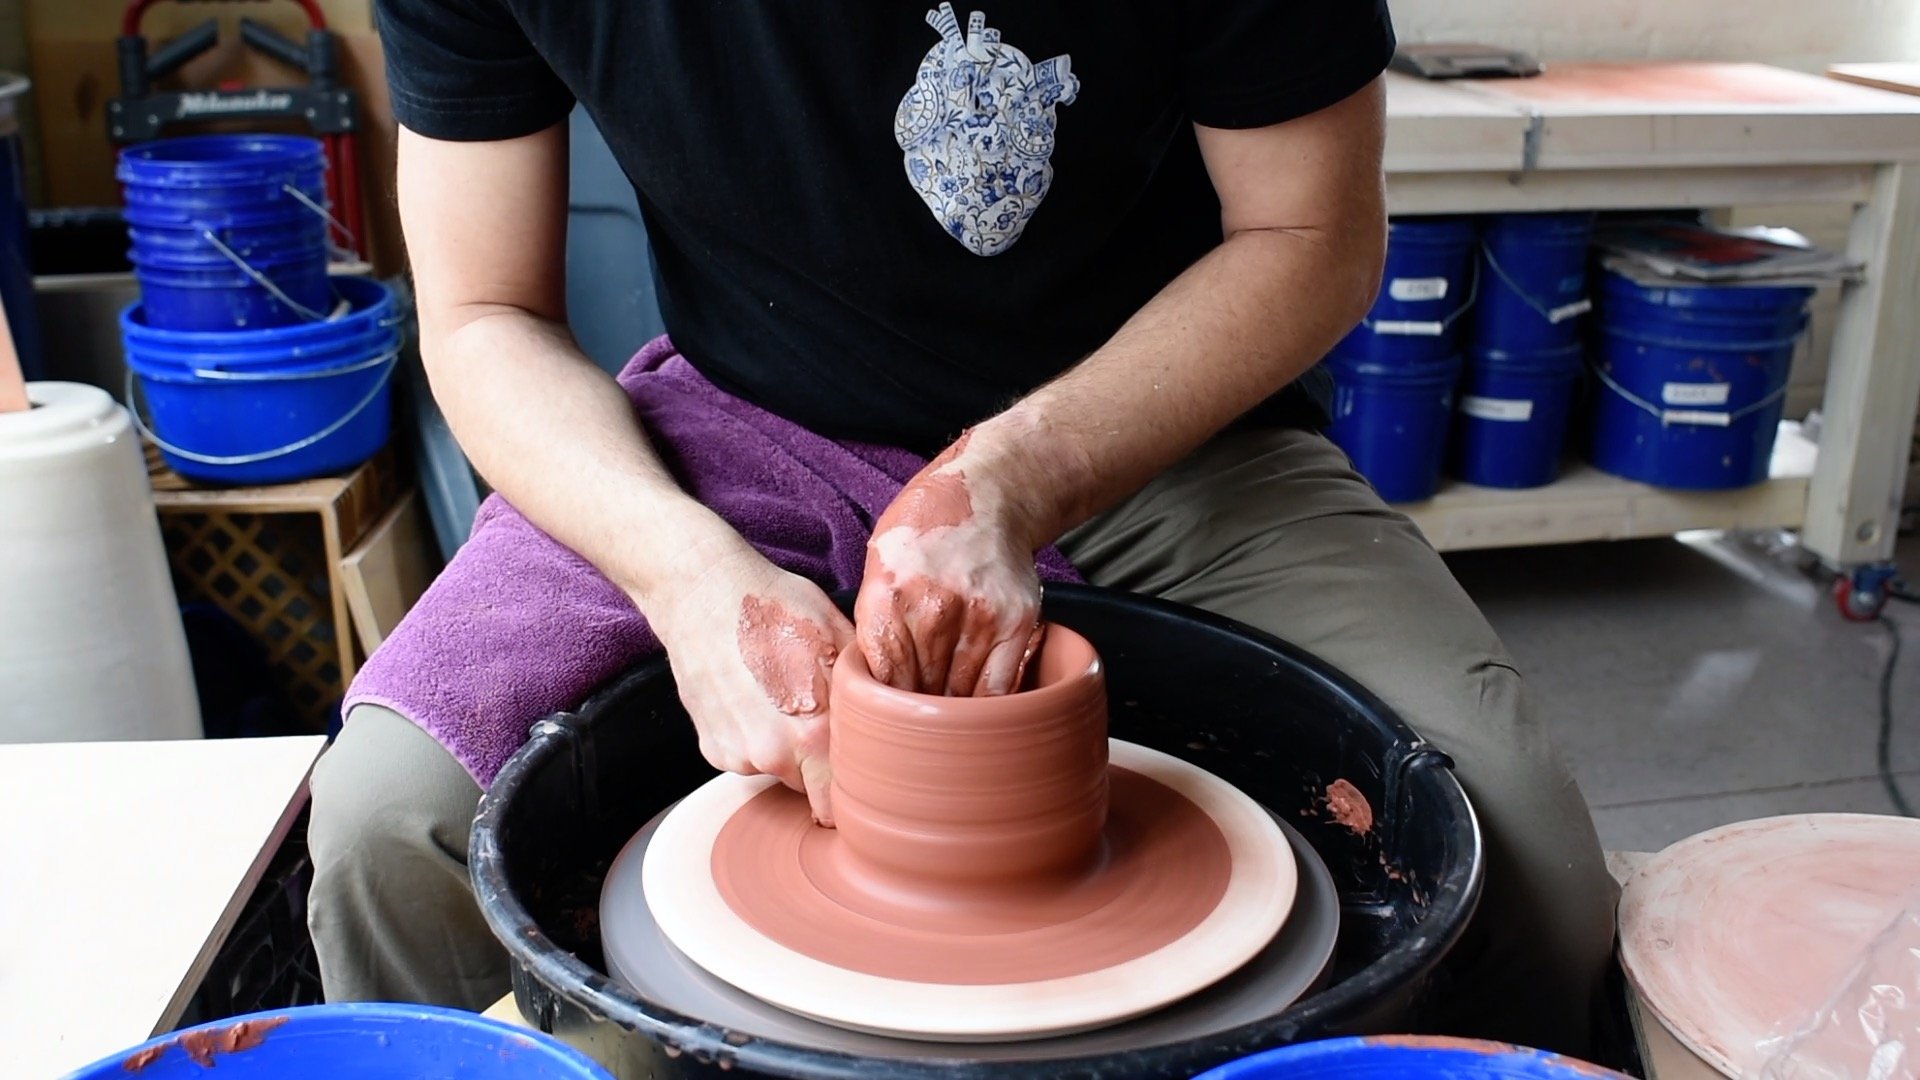 DiamondCore Carving Tools  Ceramics ideas pottery, Slab ceramics, Ceramics  pottery art